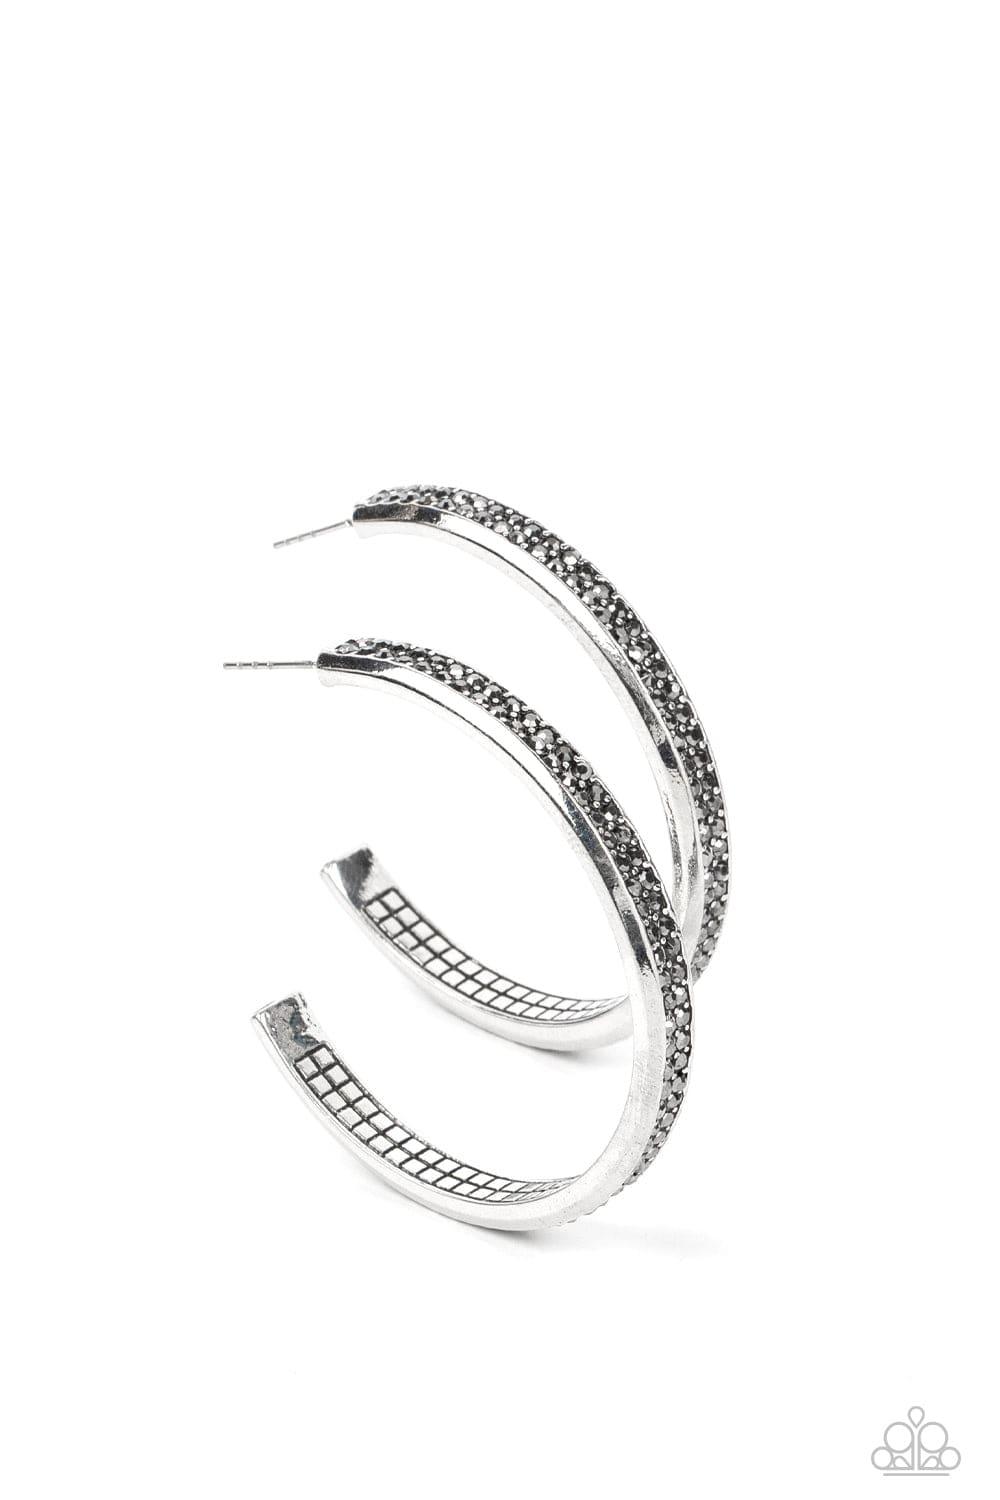 Paparazzi Accessories - Flash Freeze - Silver Hoop Earrings - Bling by JessieK